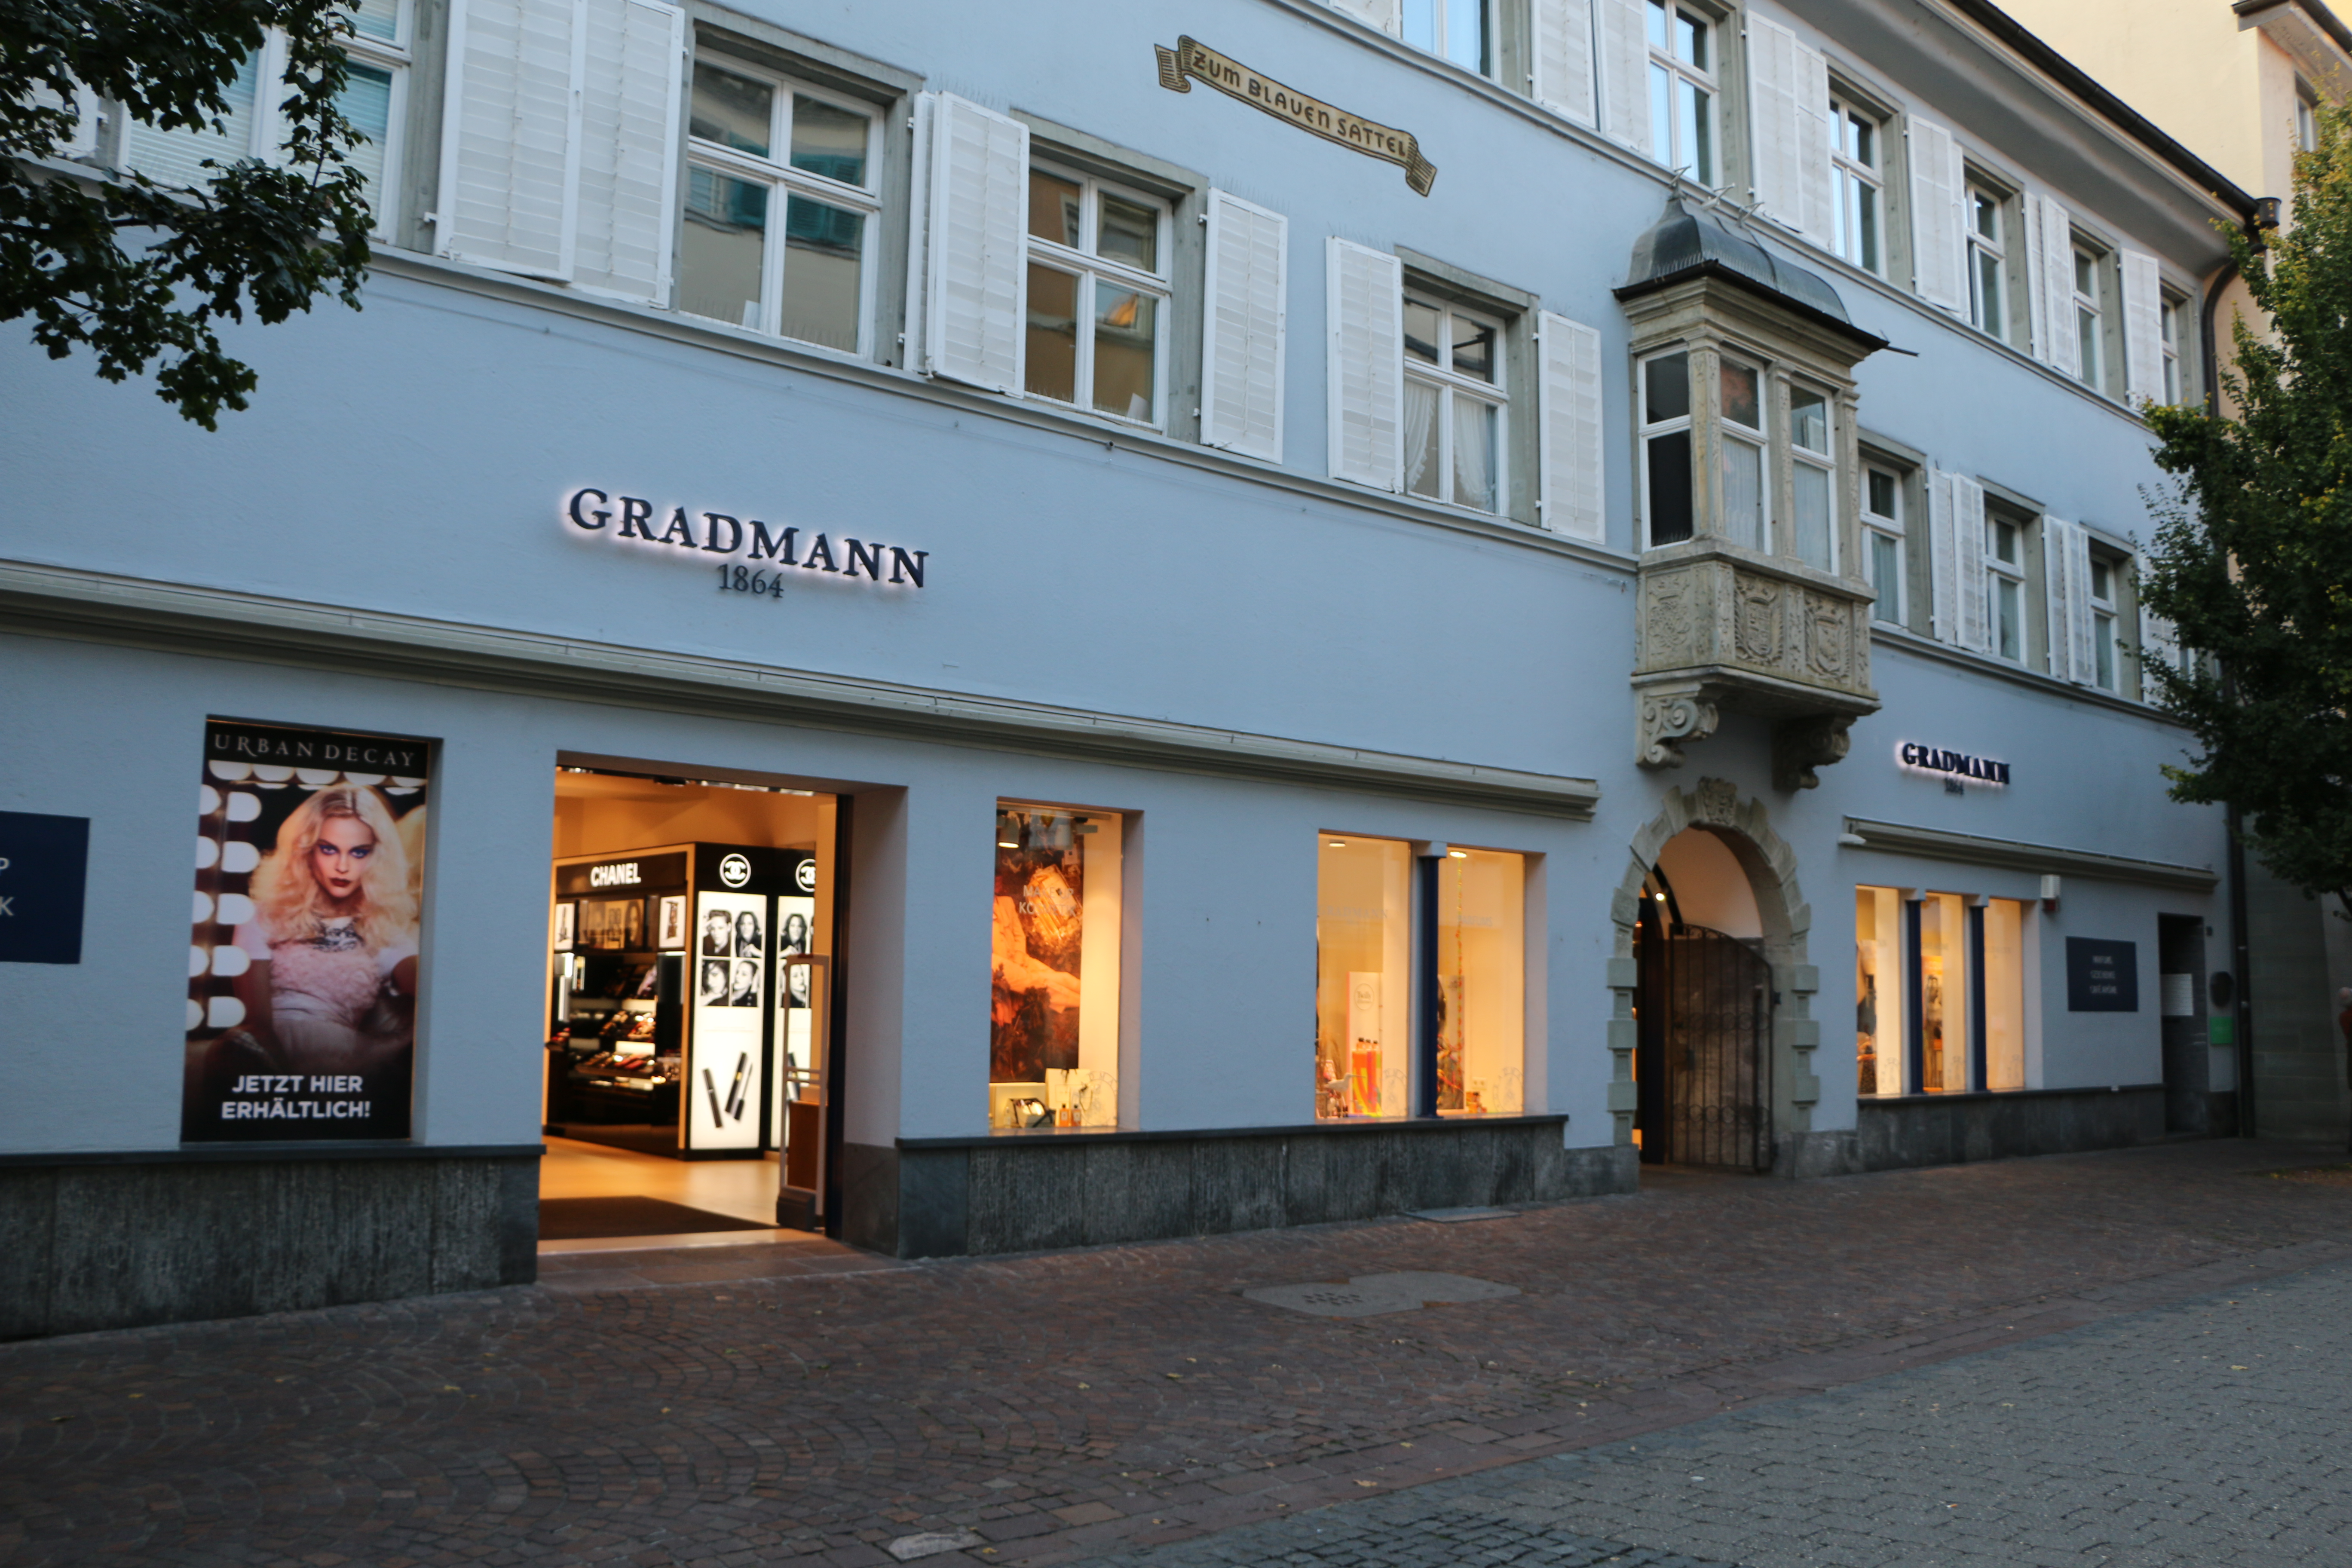 Bild 3 GRADMANN 1864 Parfümerie GmbH in Konstanz